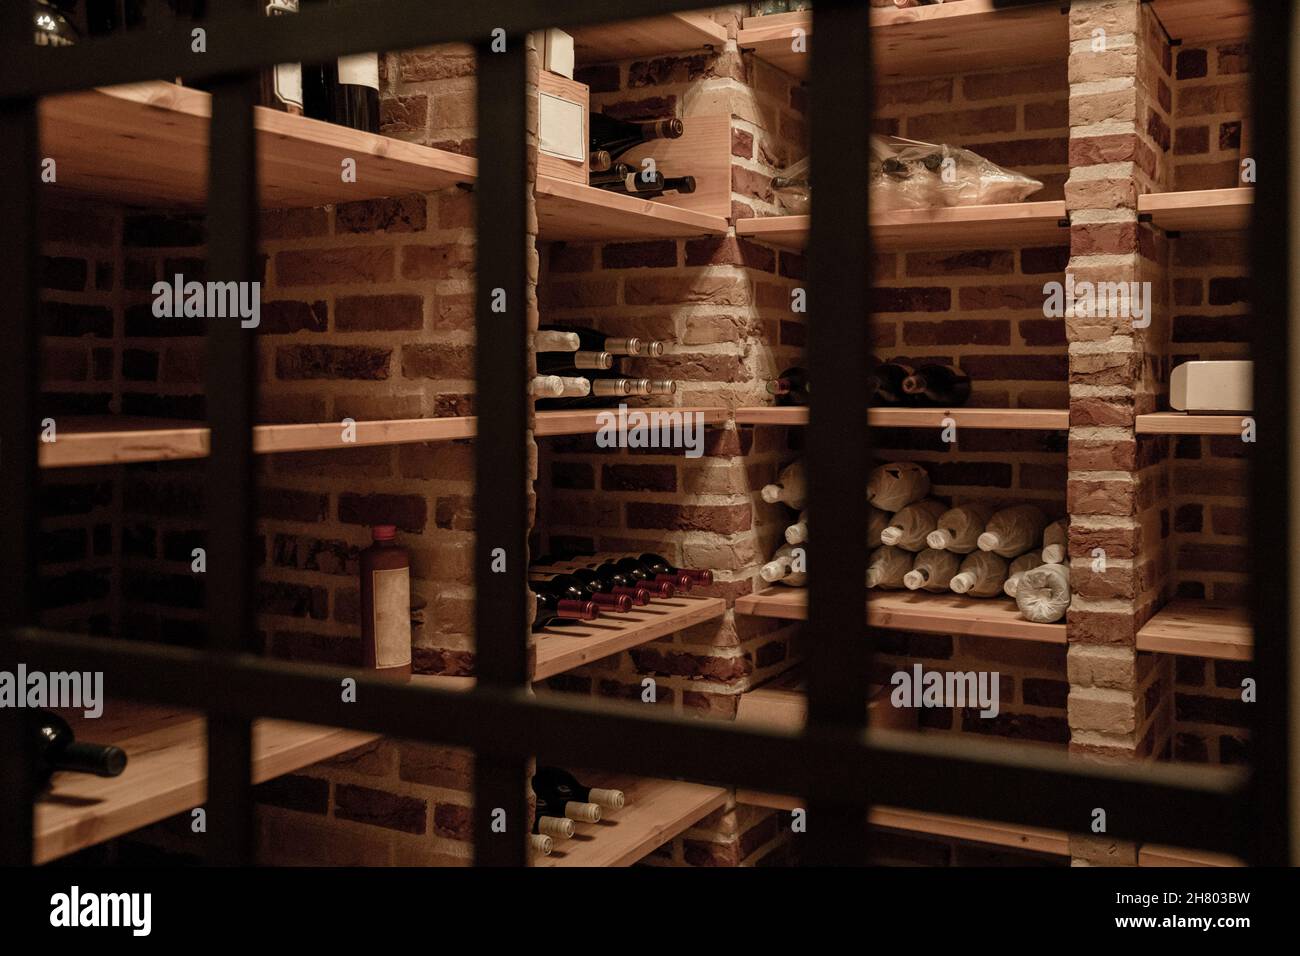 Bottiglie di vino vario poste su mensole in legno in deposito illuminato con pareti in mattoni Foto Stock